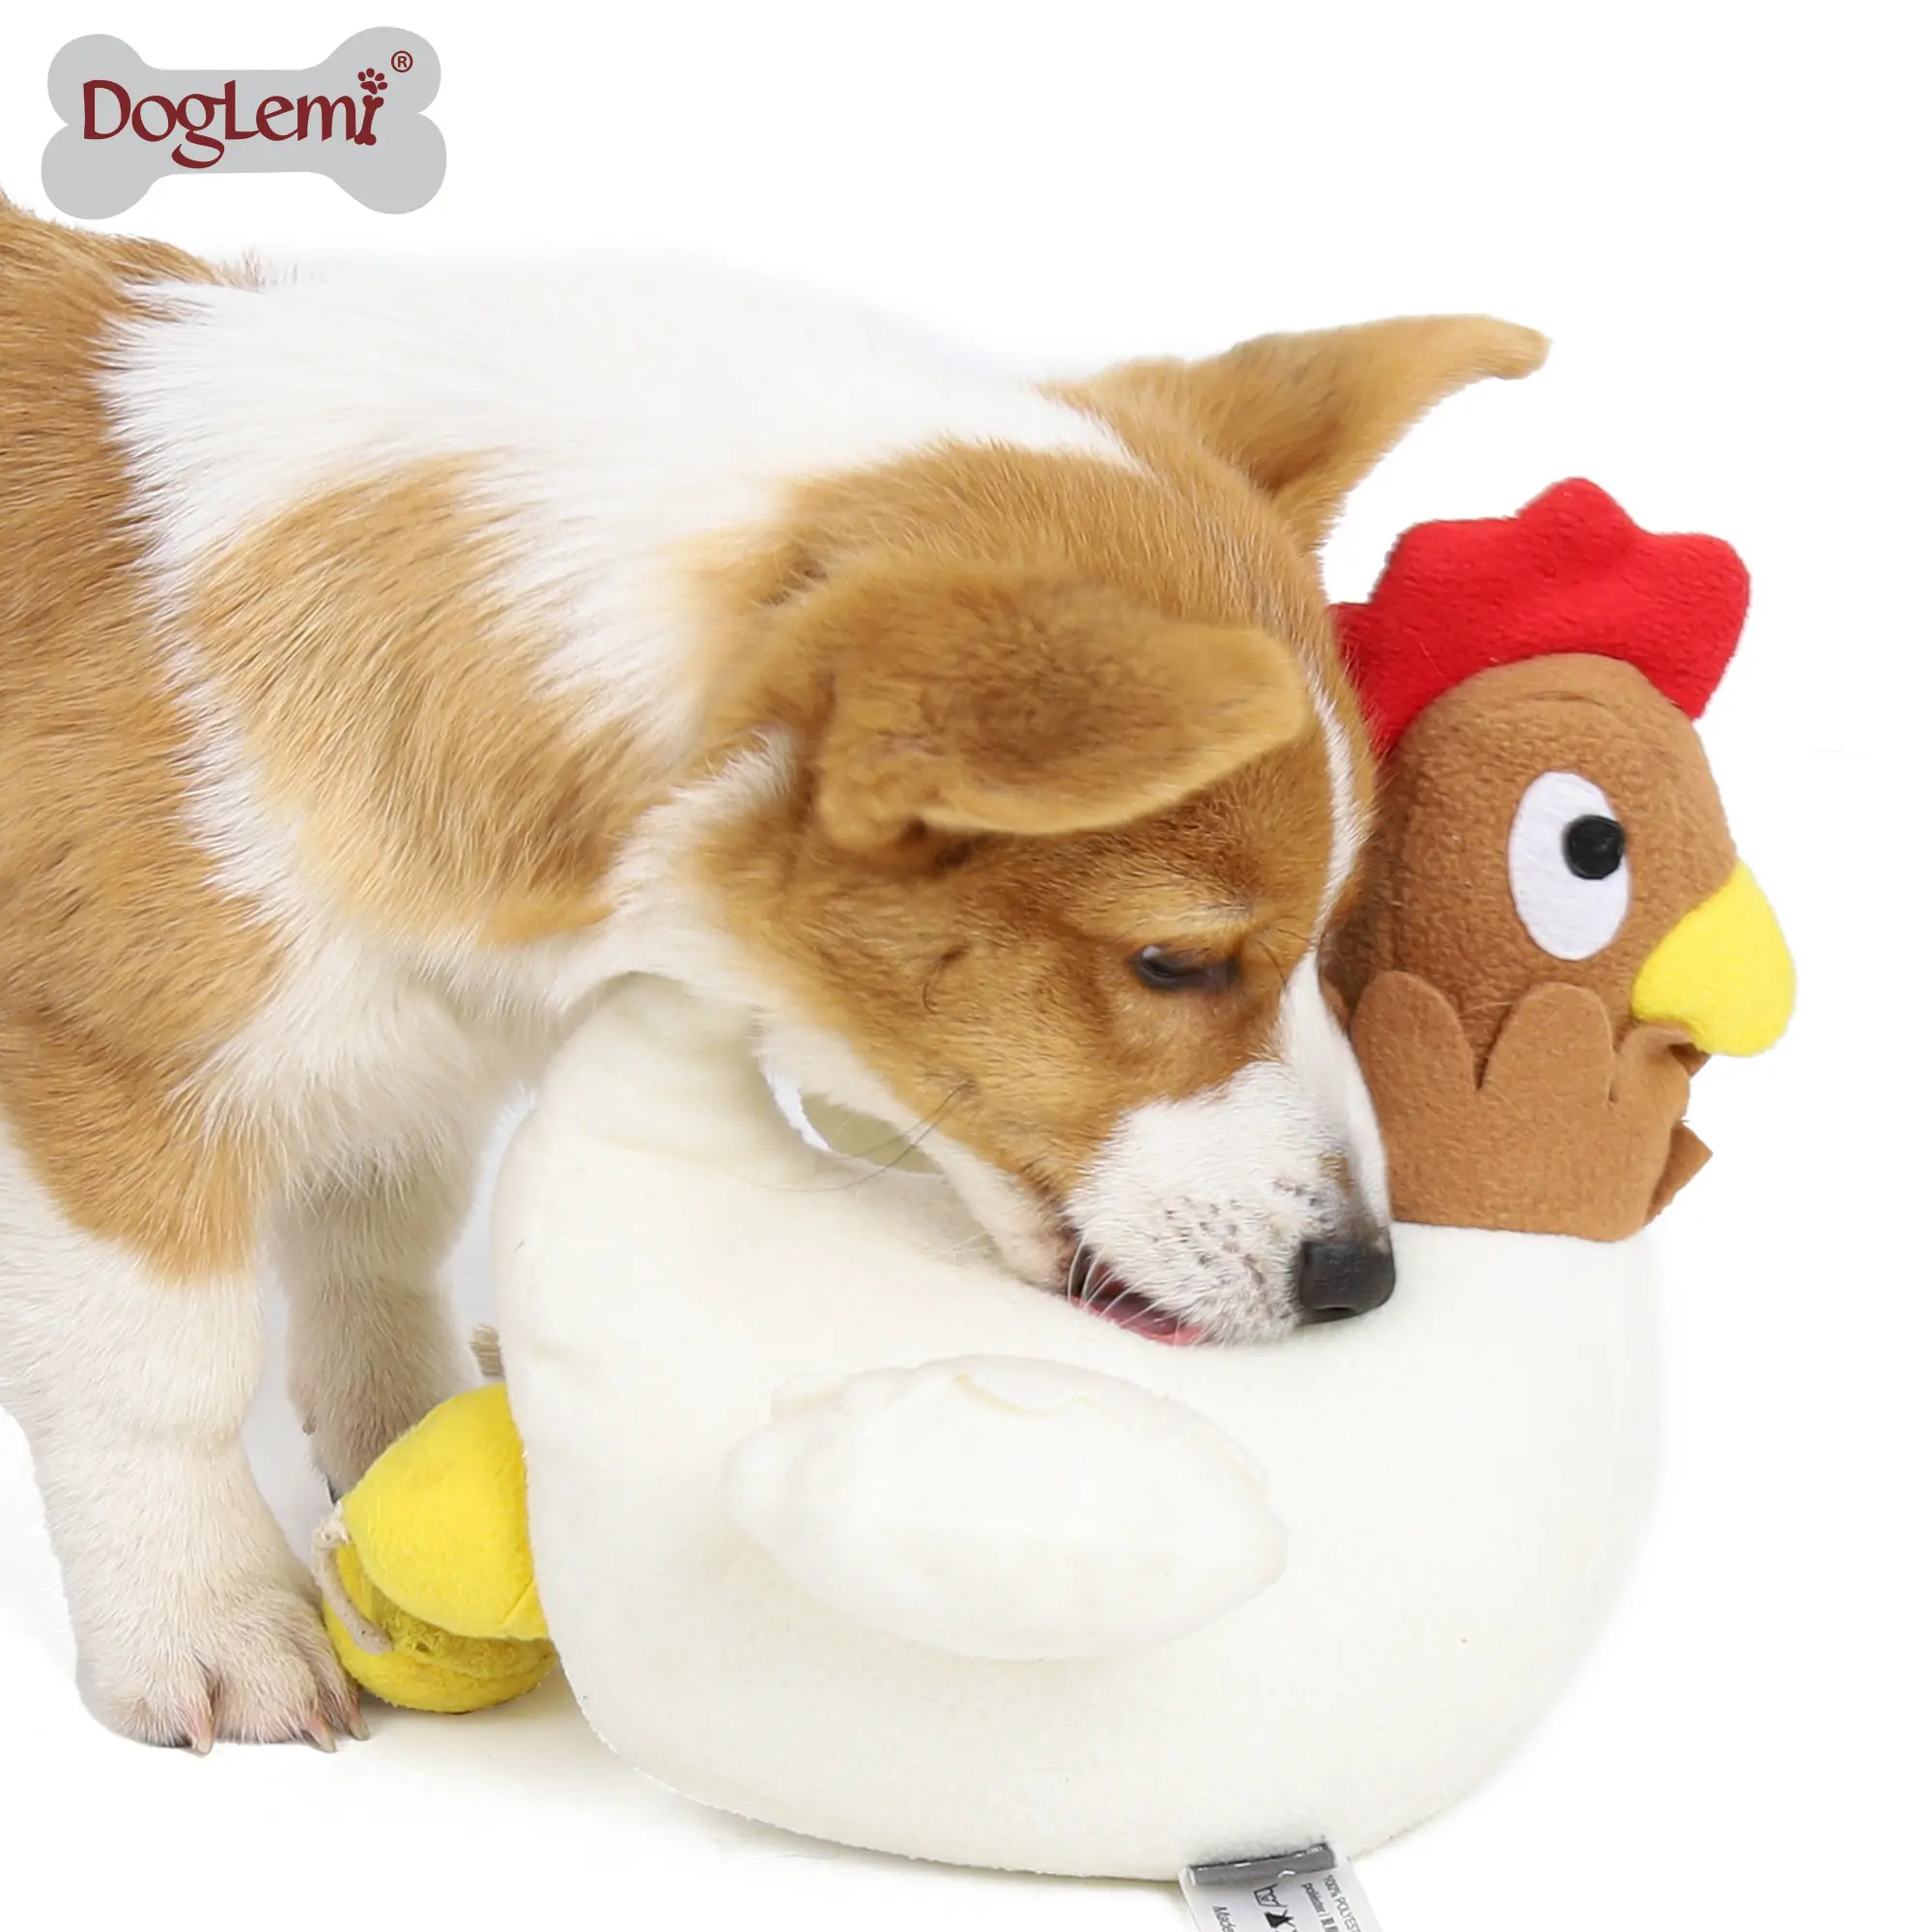 Snuffle pollo huevos juguetes de perro interactivo fabricante perro juguetes